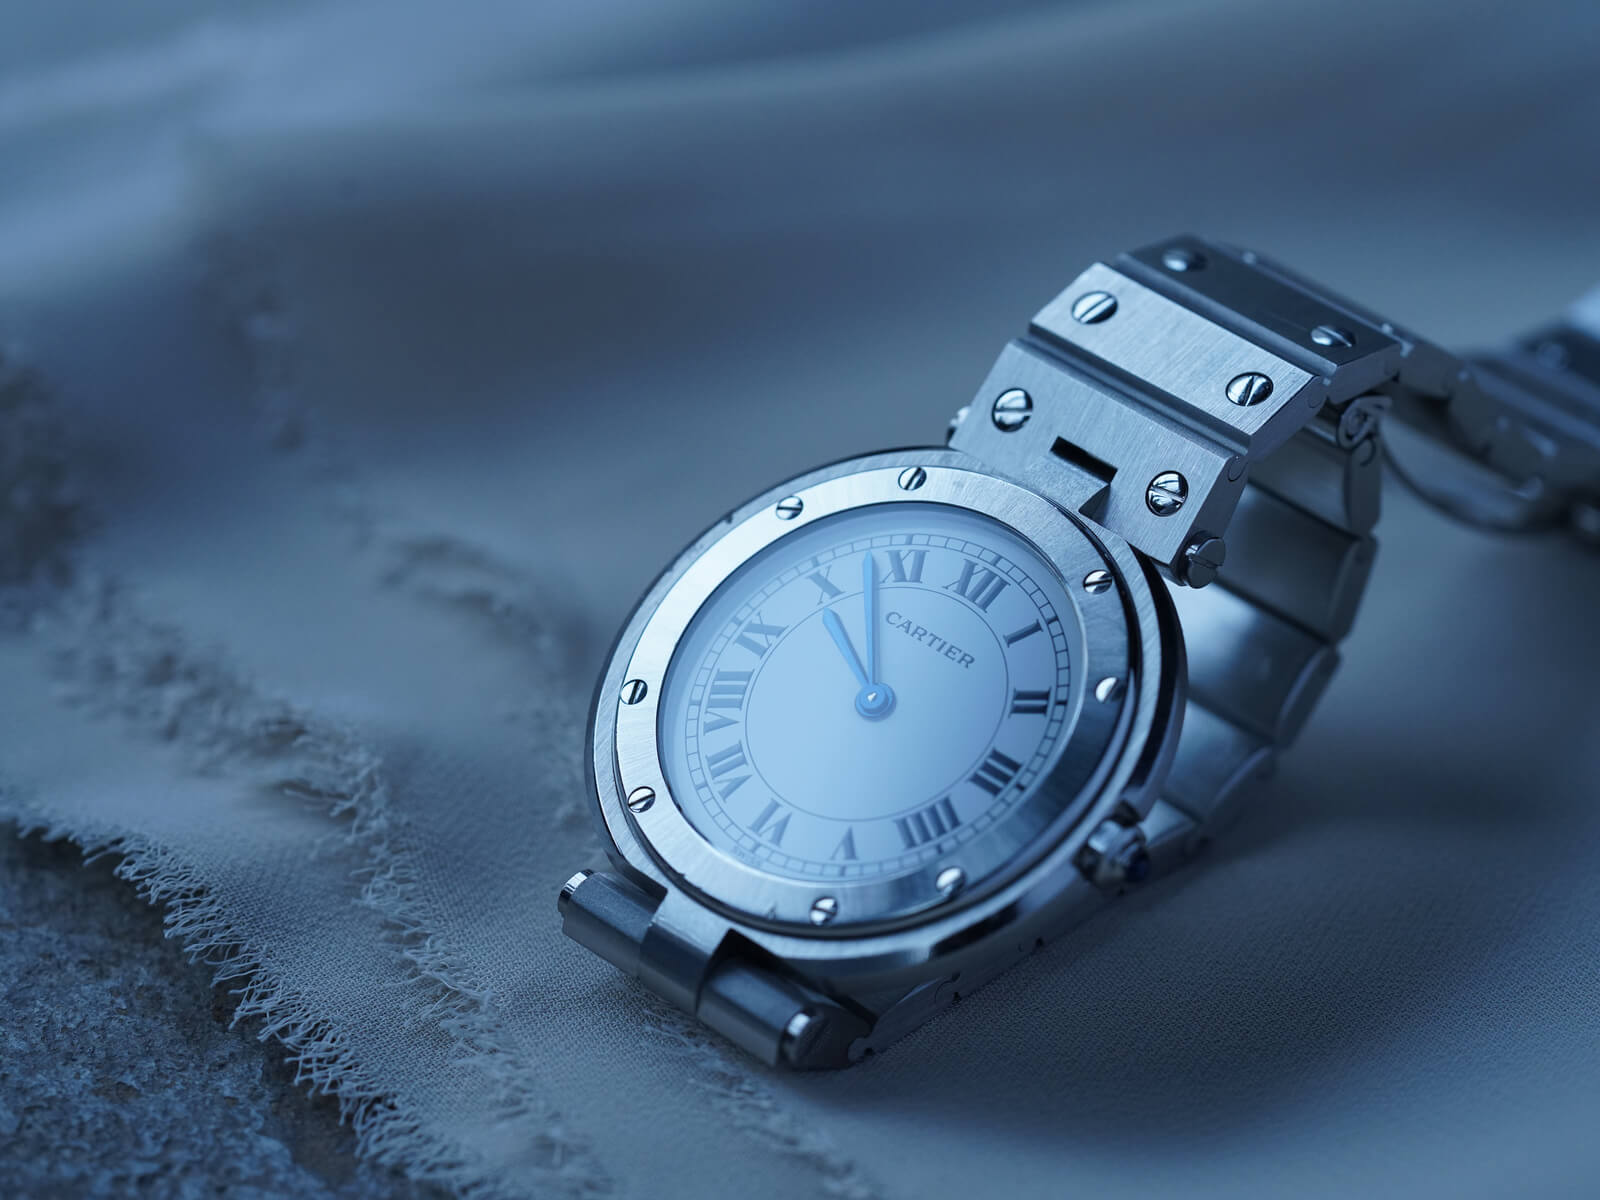 Cartier☆サントスラウンド腕時計